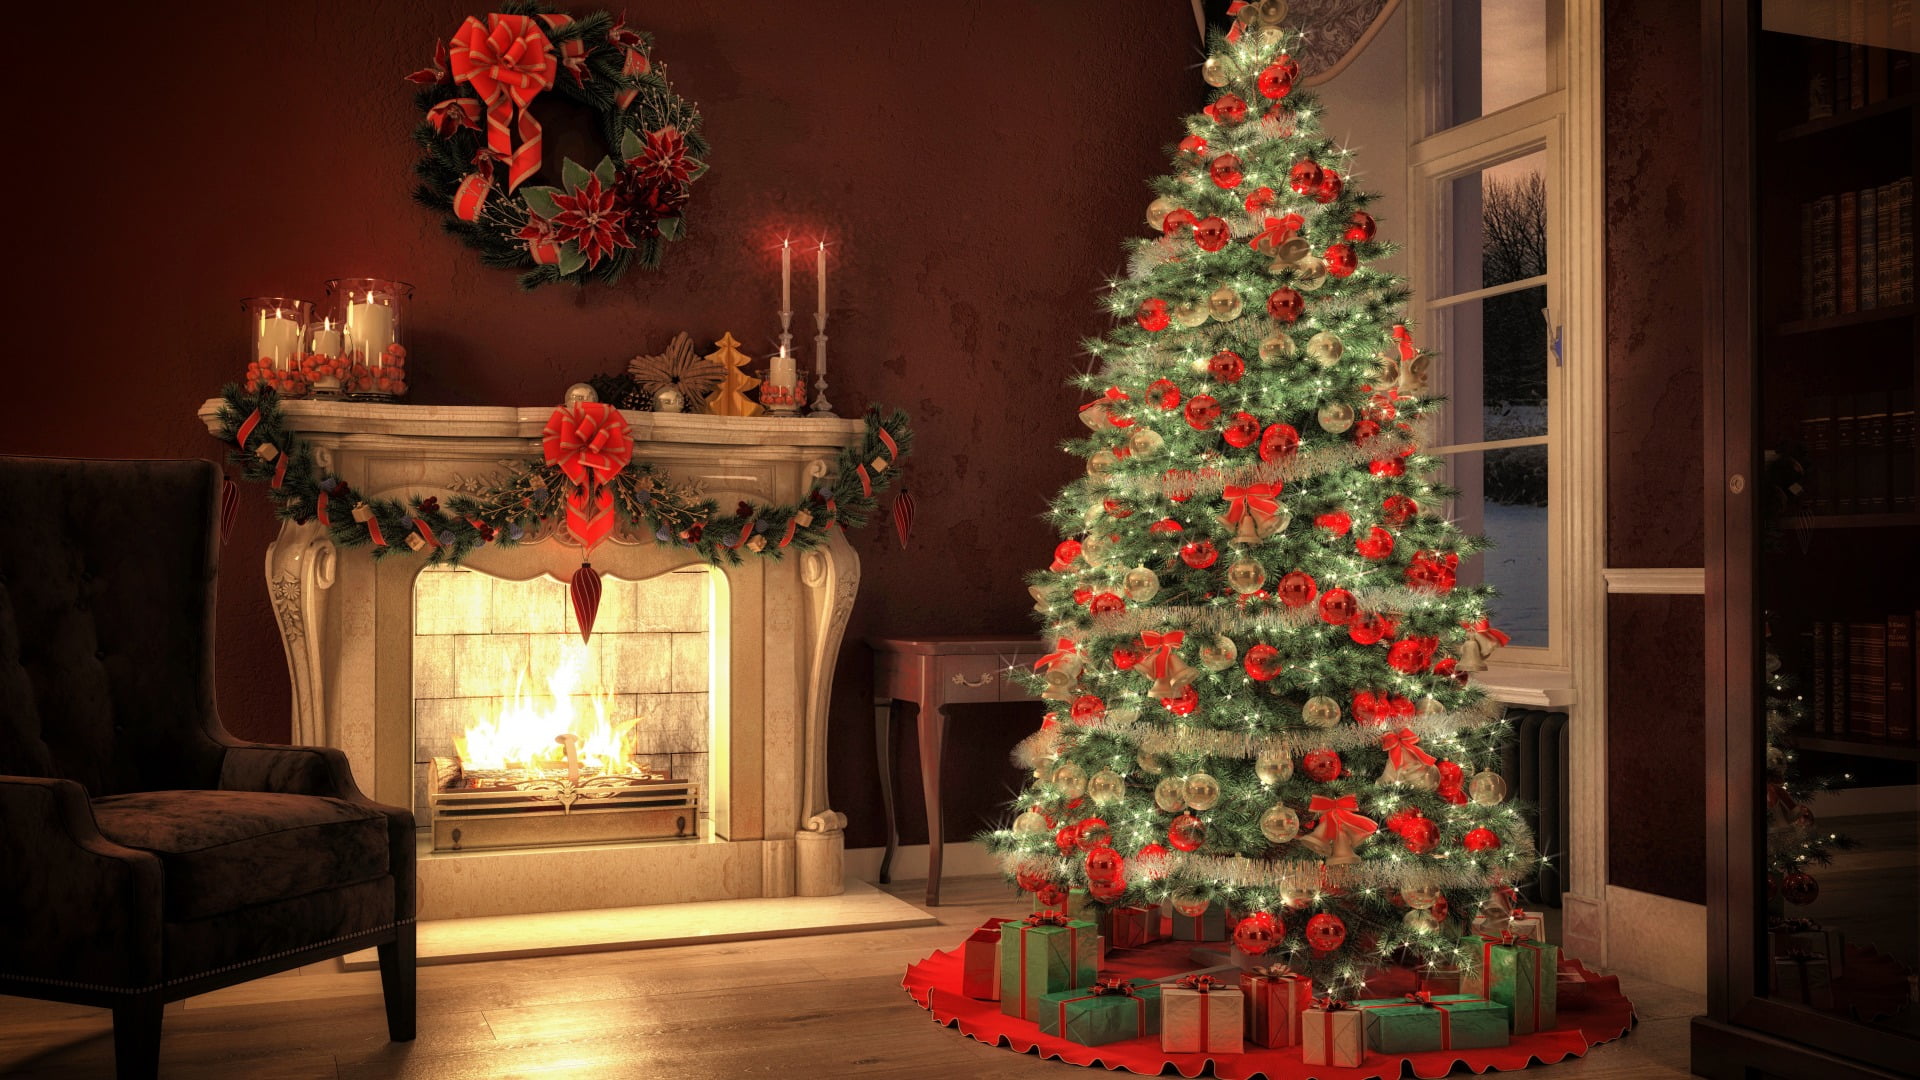 Green Christmas tree and Christmas ornament lot Christmas tree